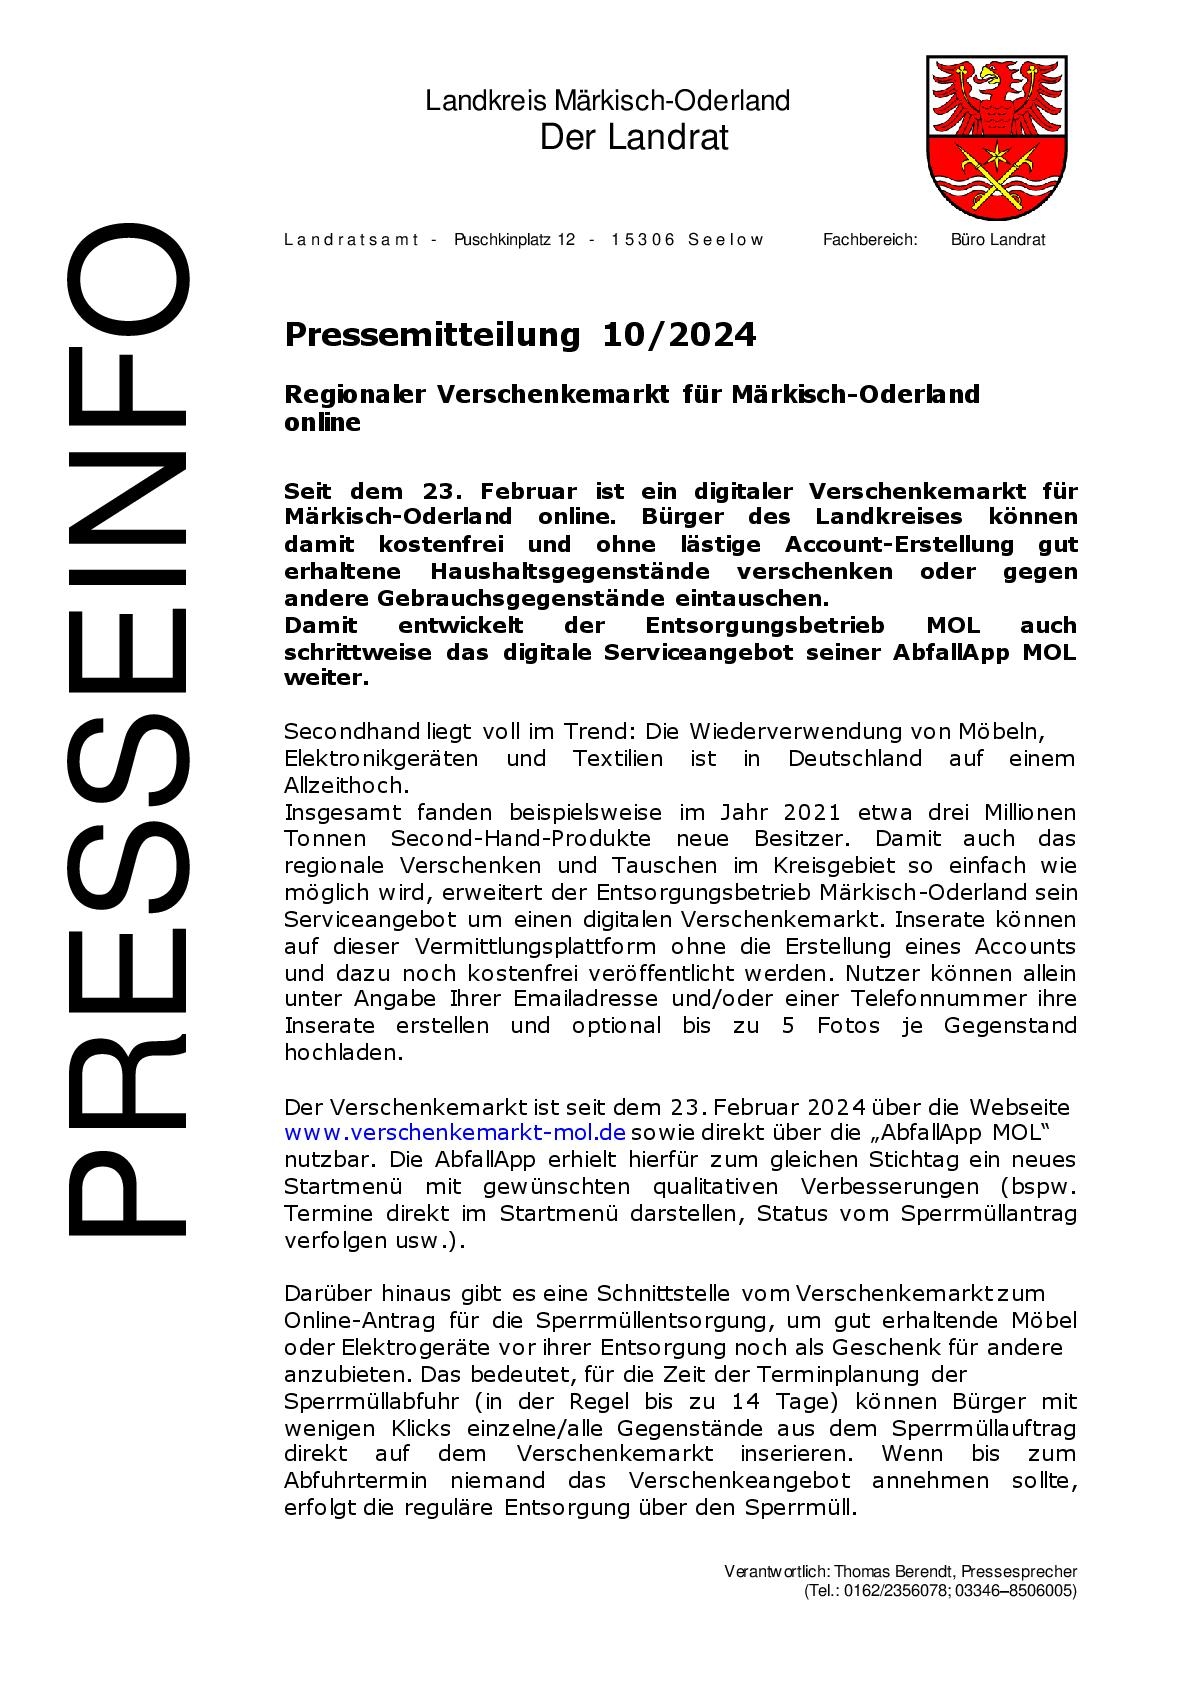 Pressemitteilung -  - 102024 - Regionaler Verschenkemarkt für Märkisch-Oderland online - 13.02.2024 -001